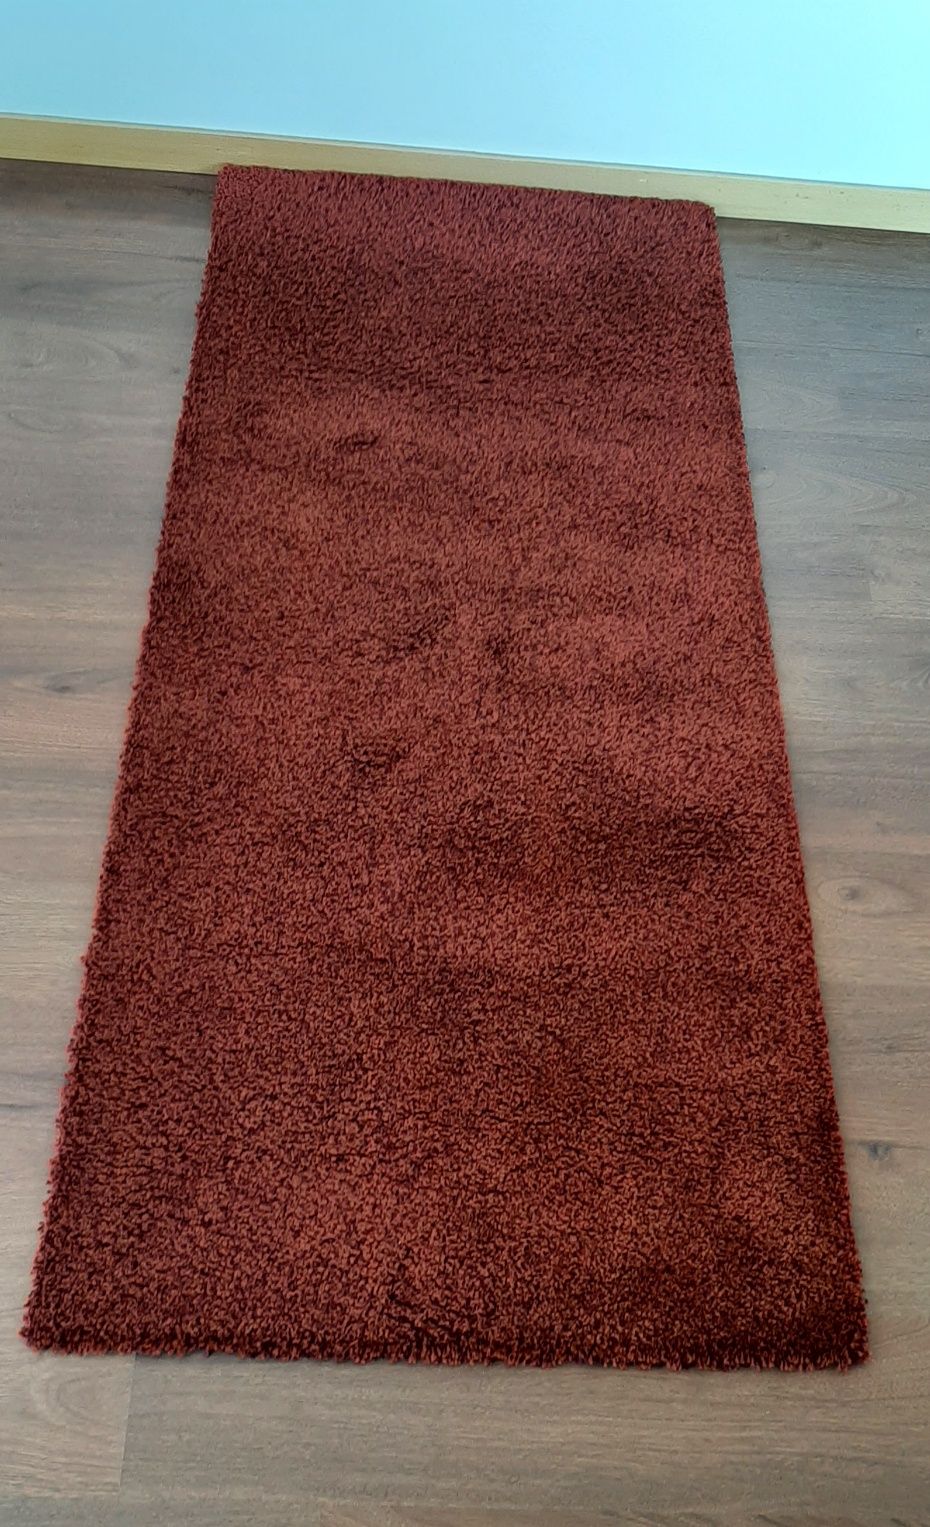 Carpete /tapete vermelho escuro (bordeaux) 196*82cm